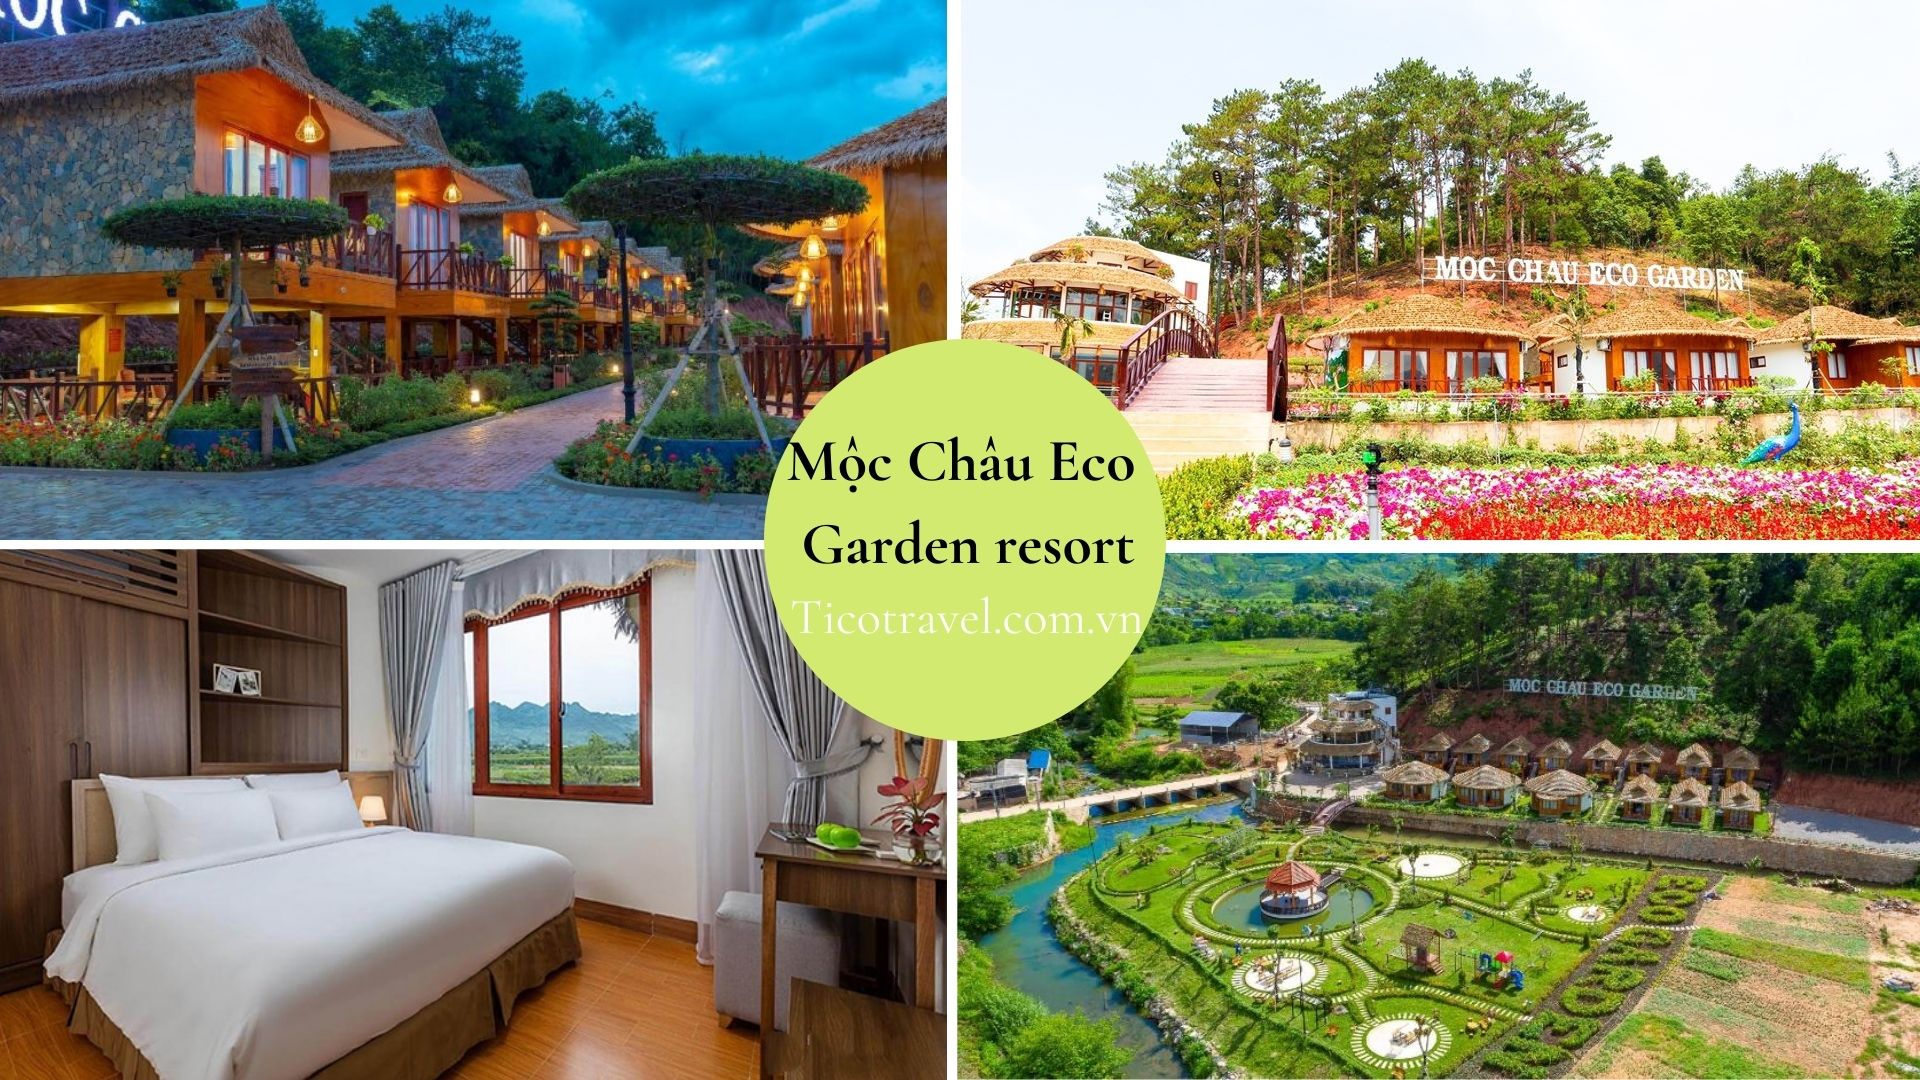 Mộc Châu Eco Garden resort Top 10 resort Mộc Châu giá rẻ view núi rừng thơ mộng không thể bỏ lỡ